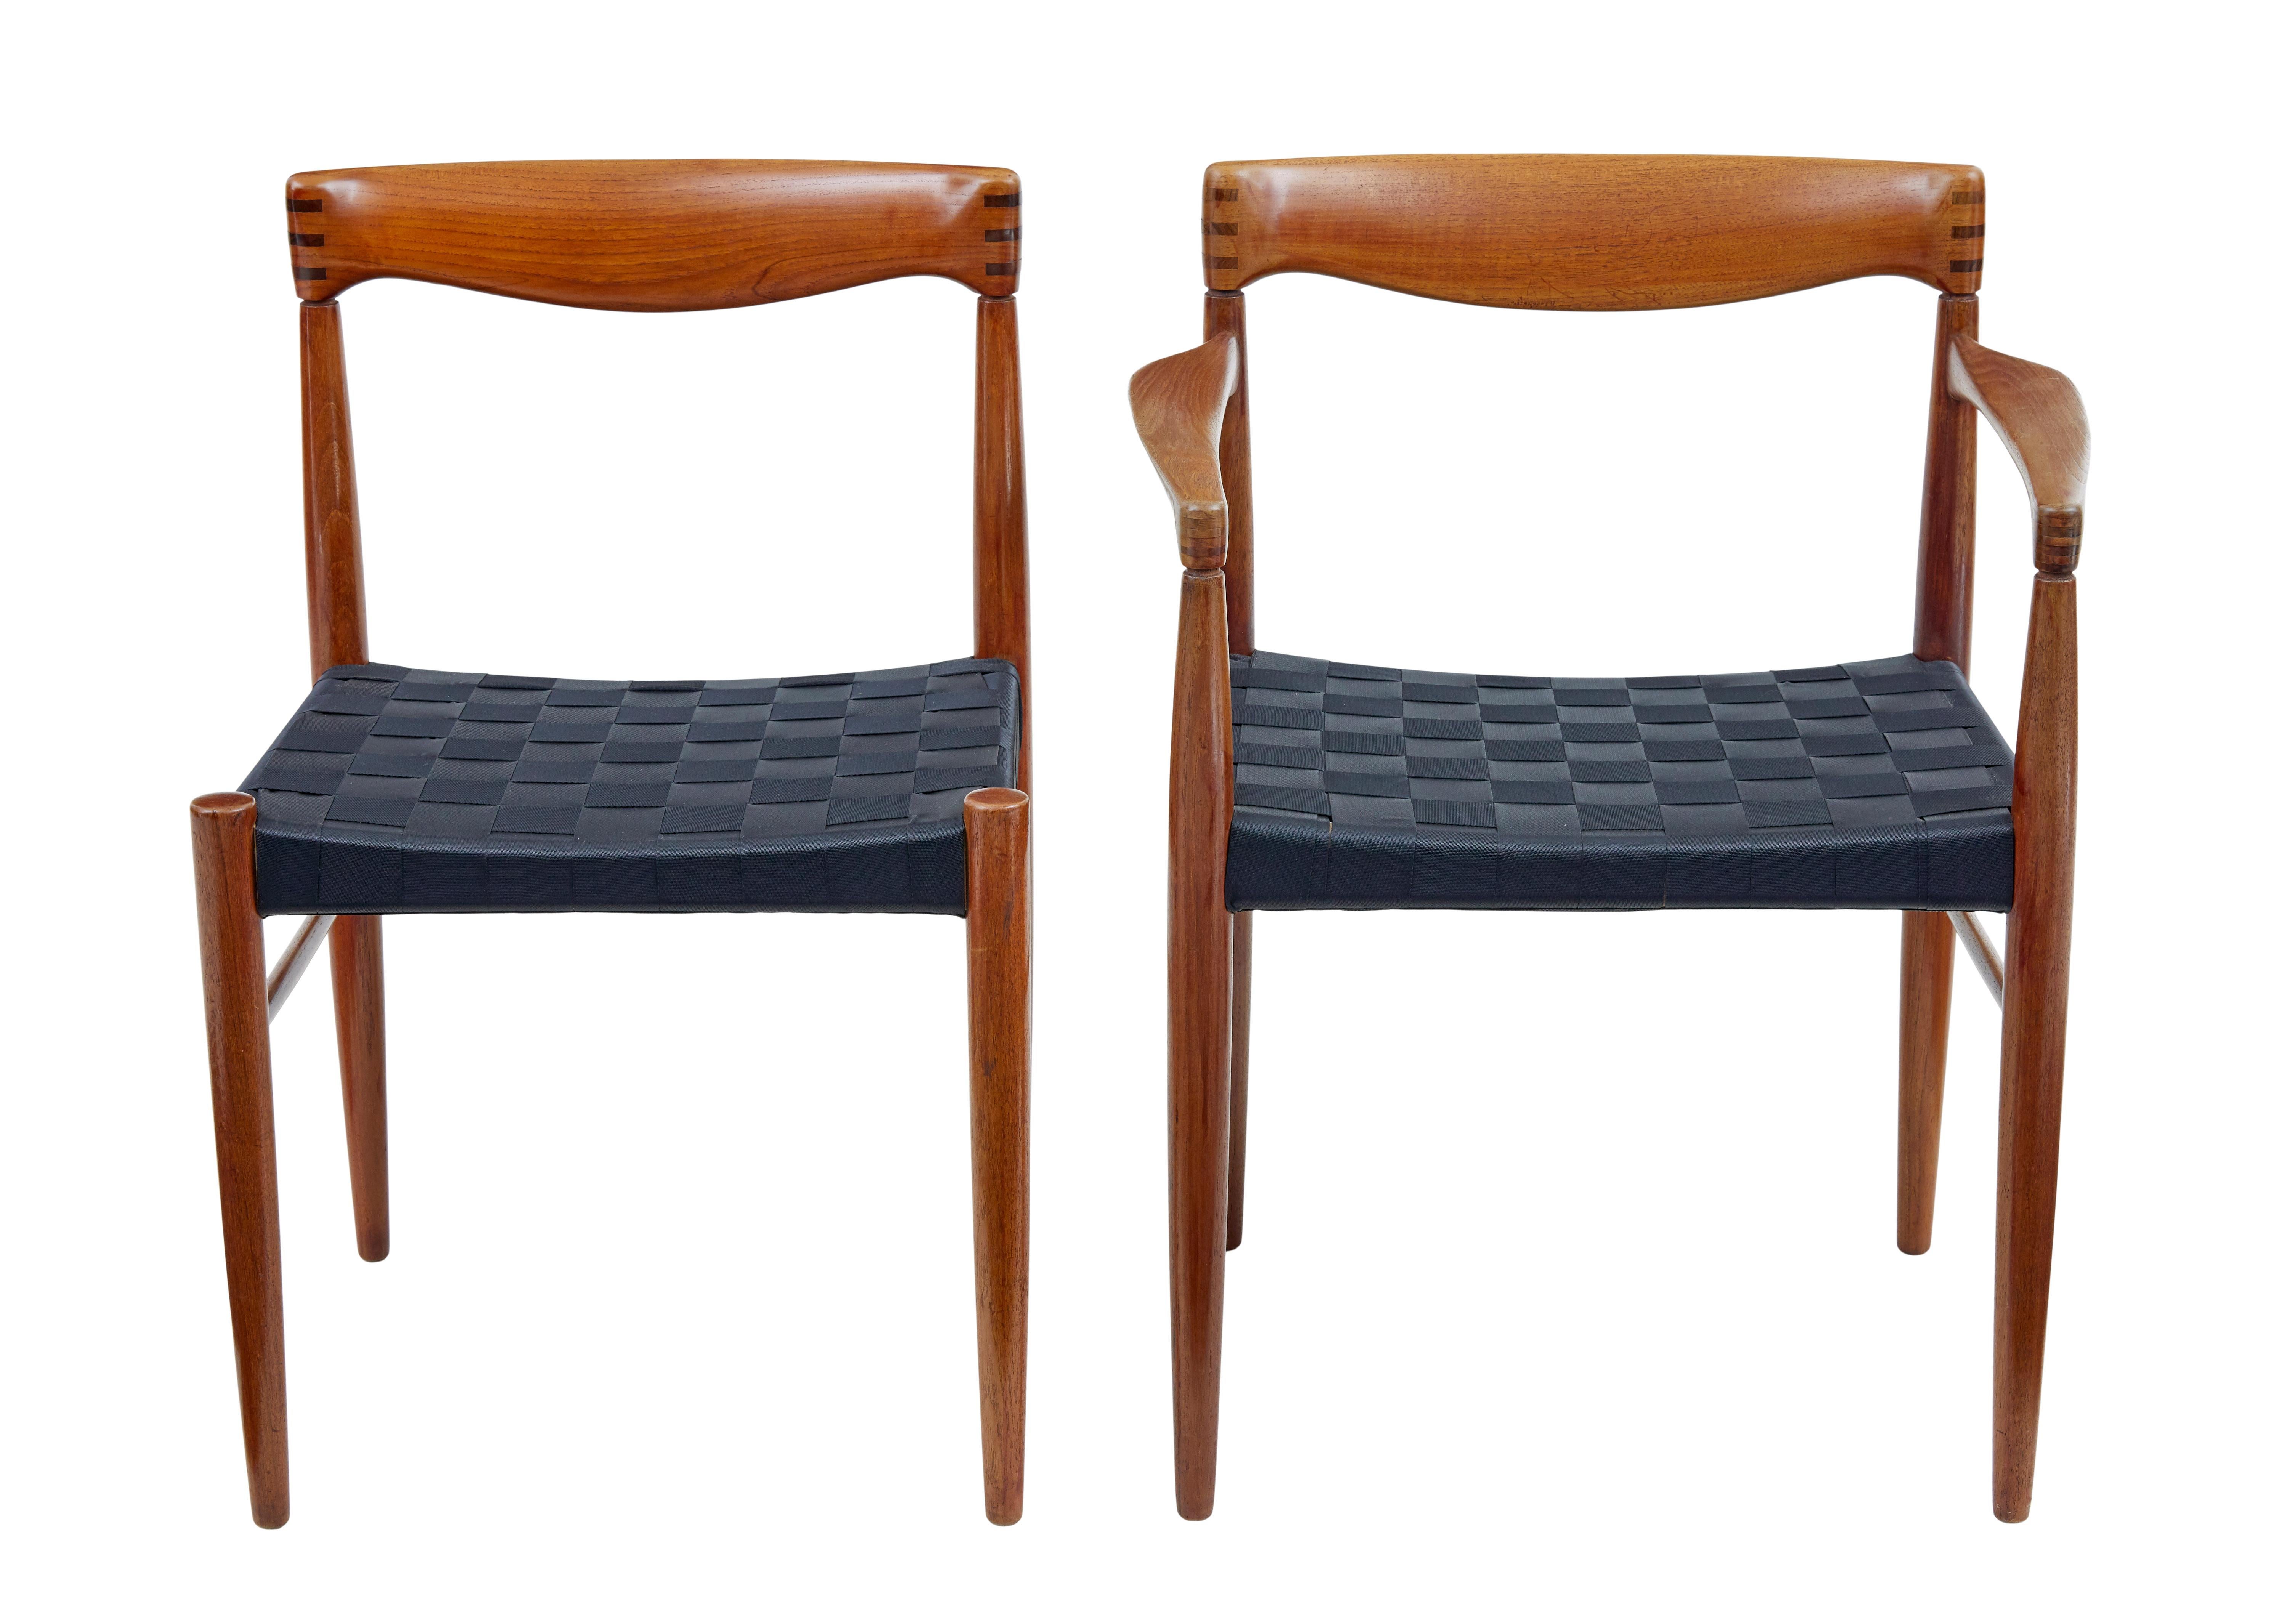 Ensemble de 10 chaises de salle à manger du milieu du siècle par bramin circa 1960.

Rarement trouvé dans un ensemble aussi important.

Ensemble de chaises de salle à manger de grande qualité et très appréciées, conçues par H.W Klein pour Bramin au